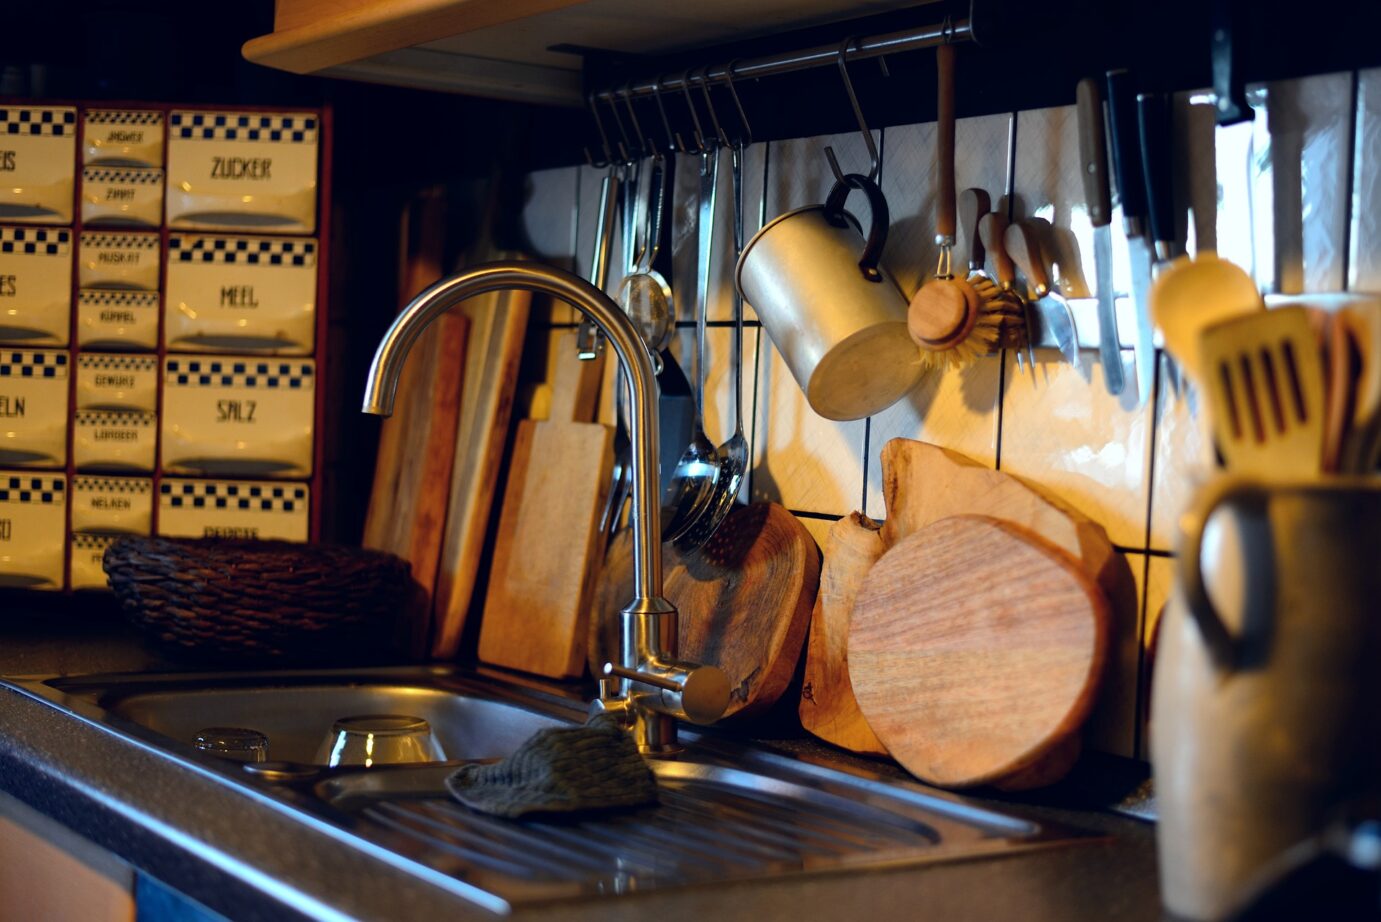 Küche mit Küchenutensilien, Spüle und Holzbrettern arrangiert für umweltfreundliches Kochen